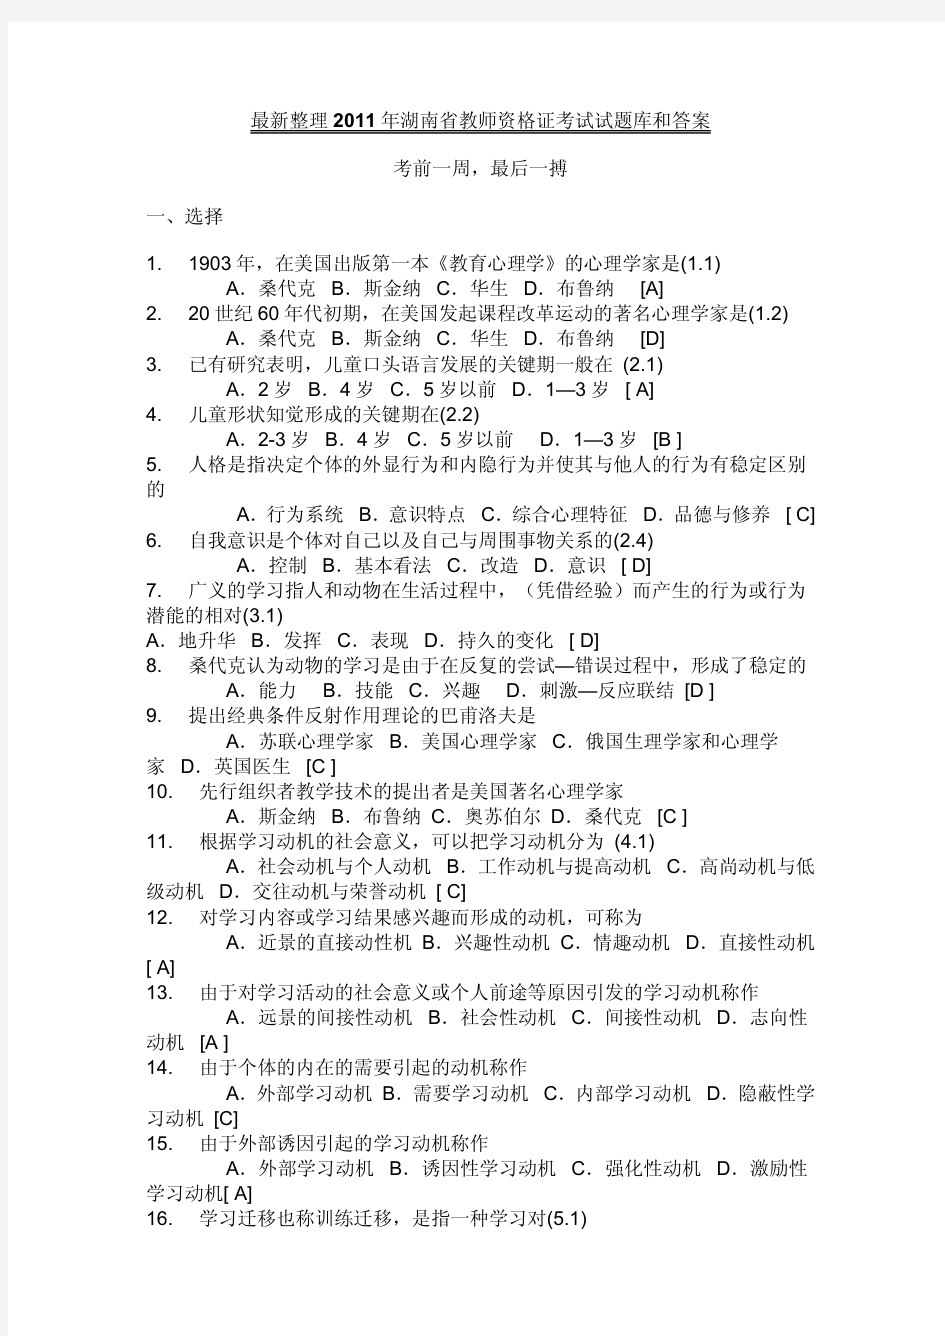 最新整理2013年湖南省教师资格证考试试题库和答案